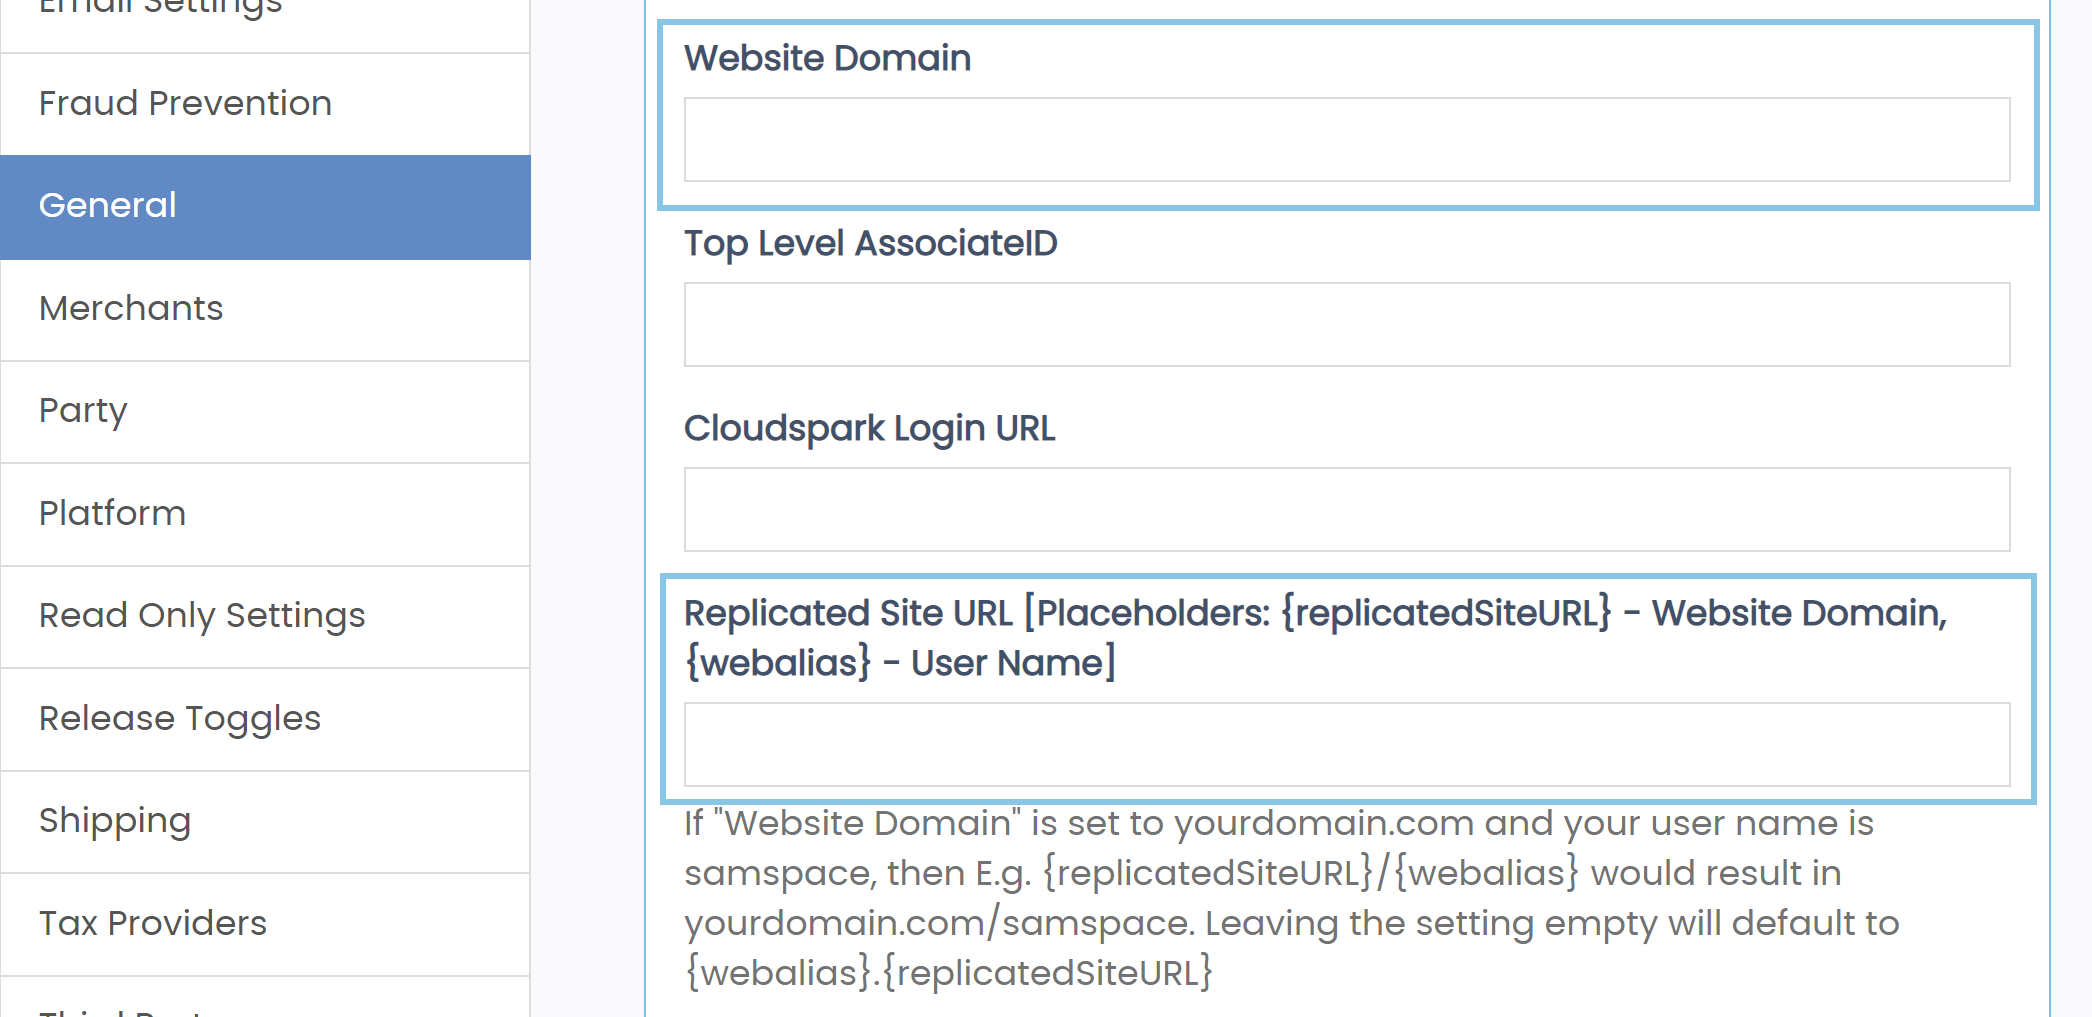 adv-settings-general-domain-replicated.png